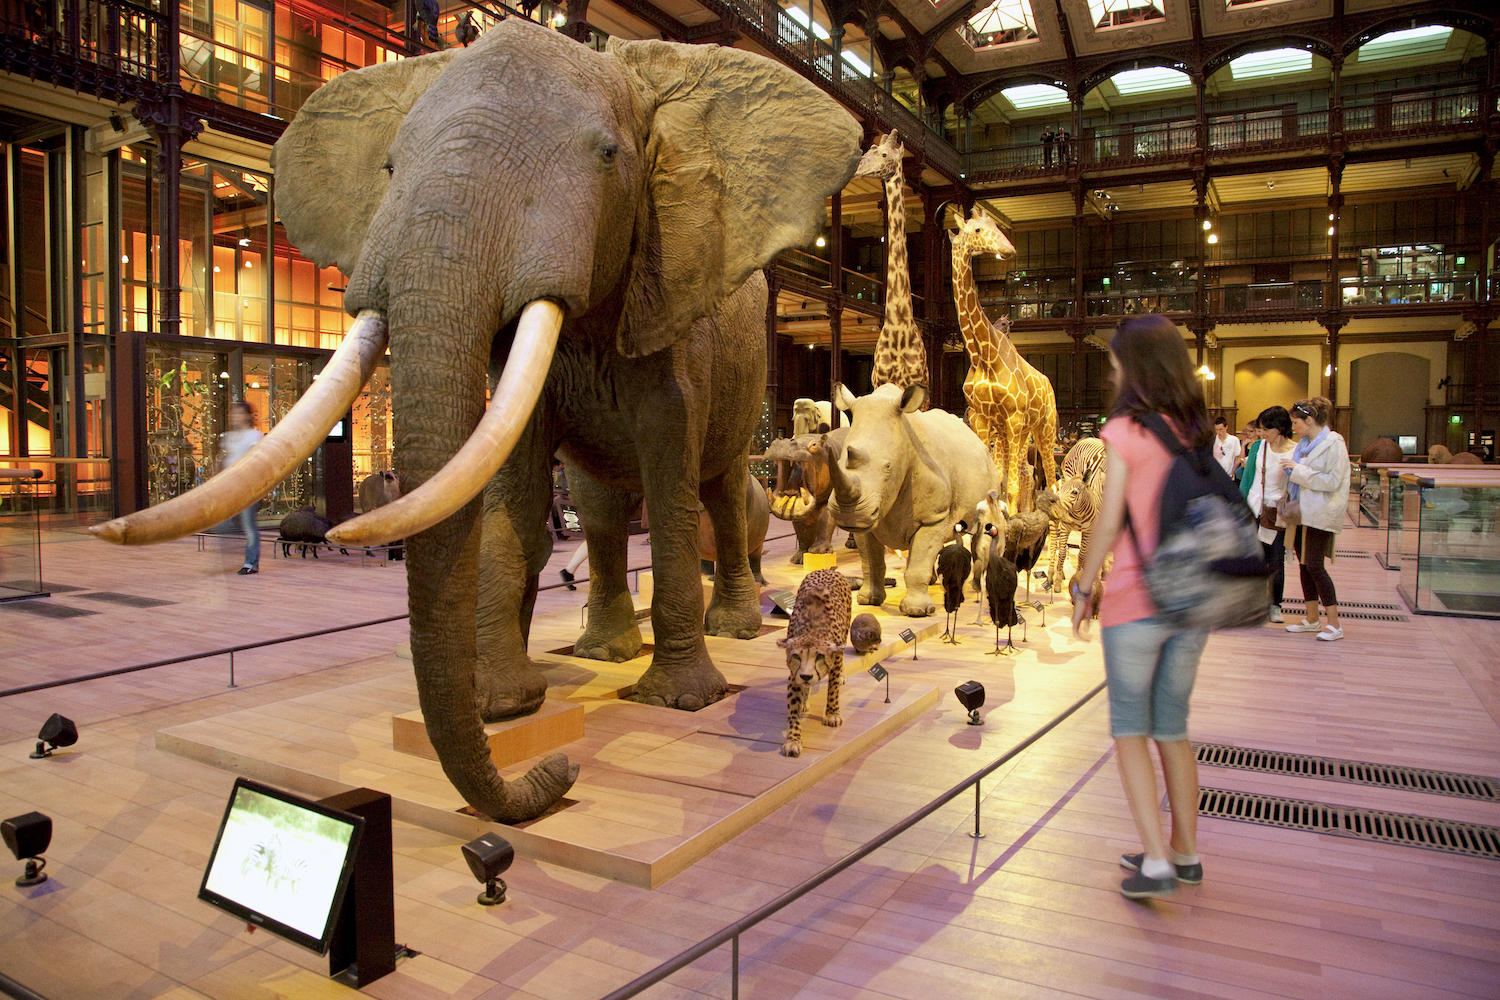 Galerie de l'évolution musée histoire naturelle parijs